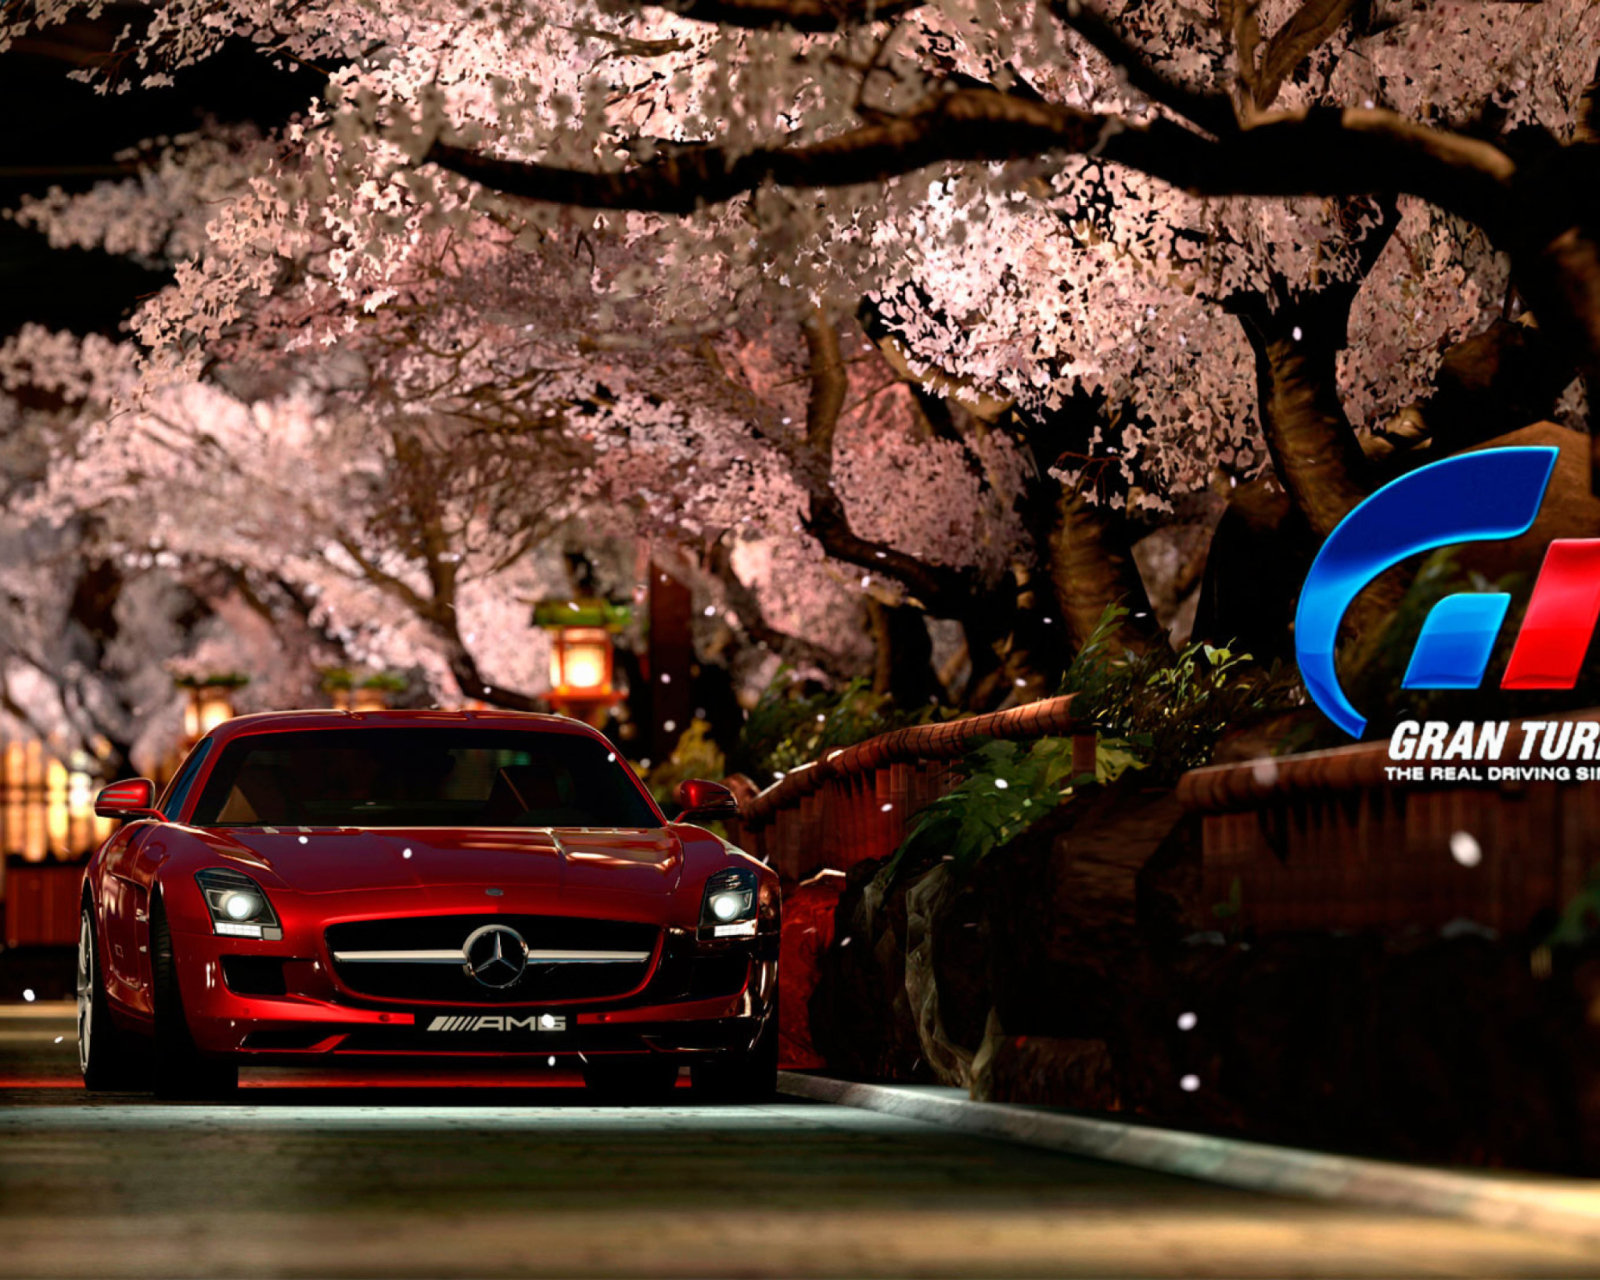 Das Gran Turismo 5 Wallpaper 1600x1280